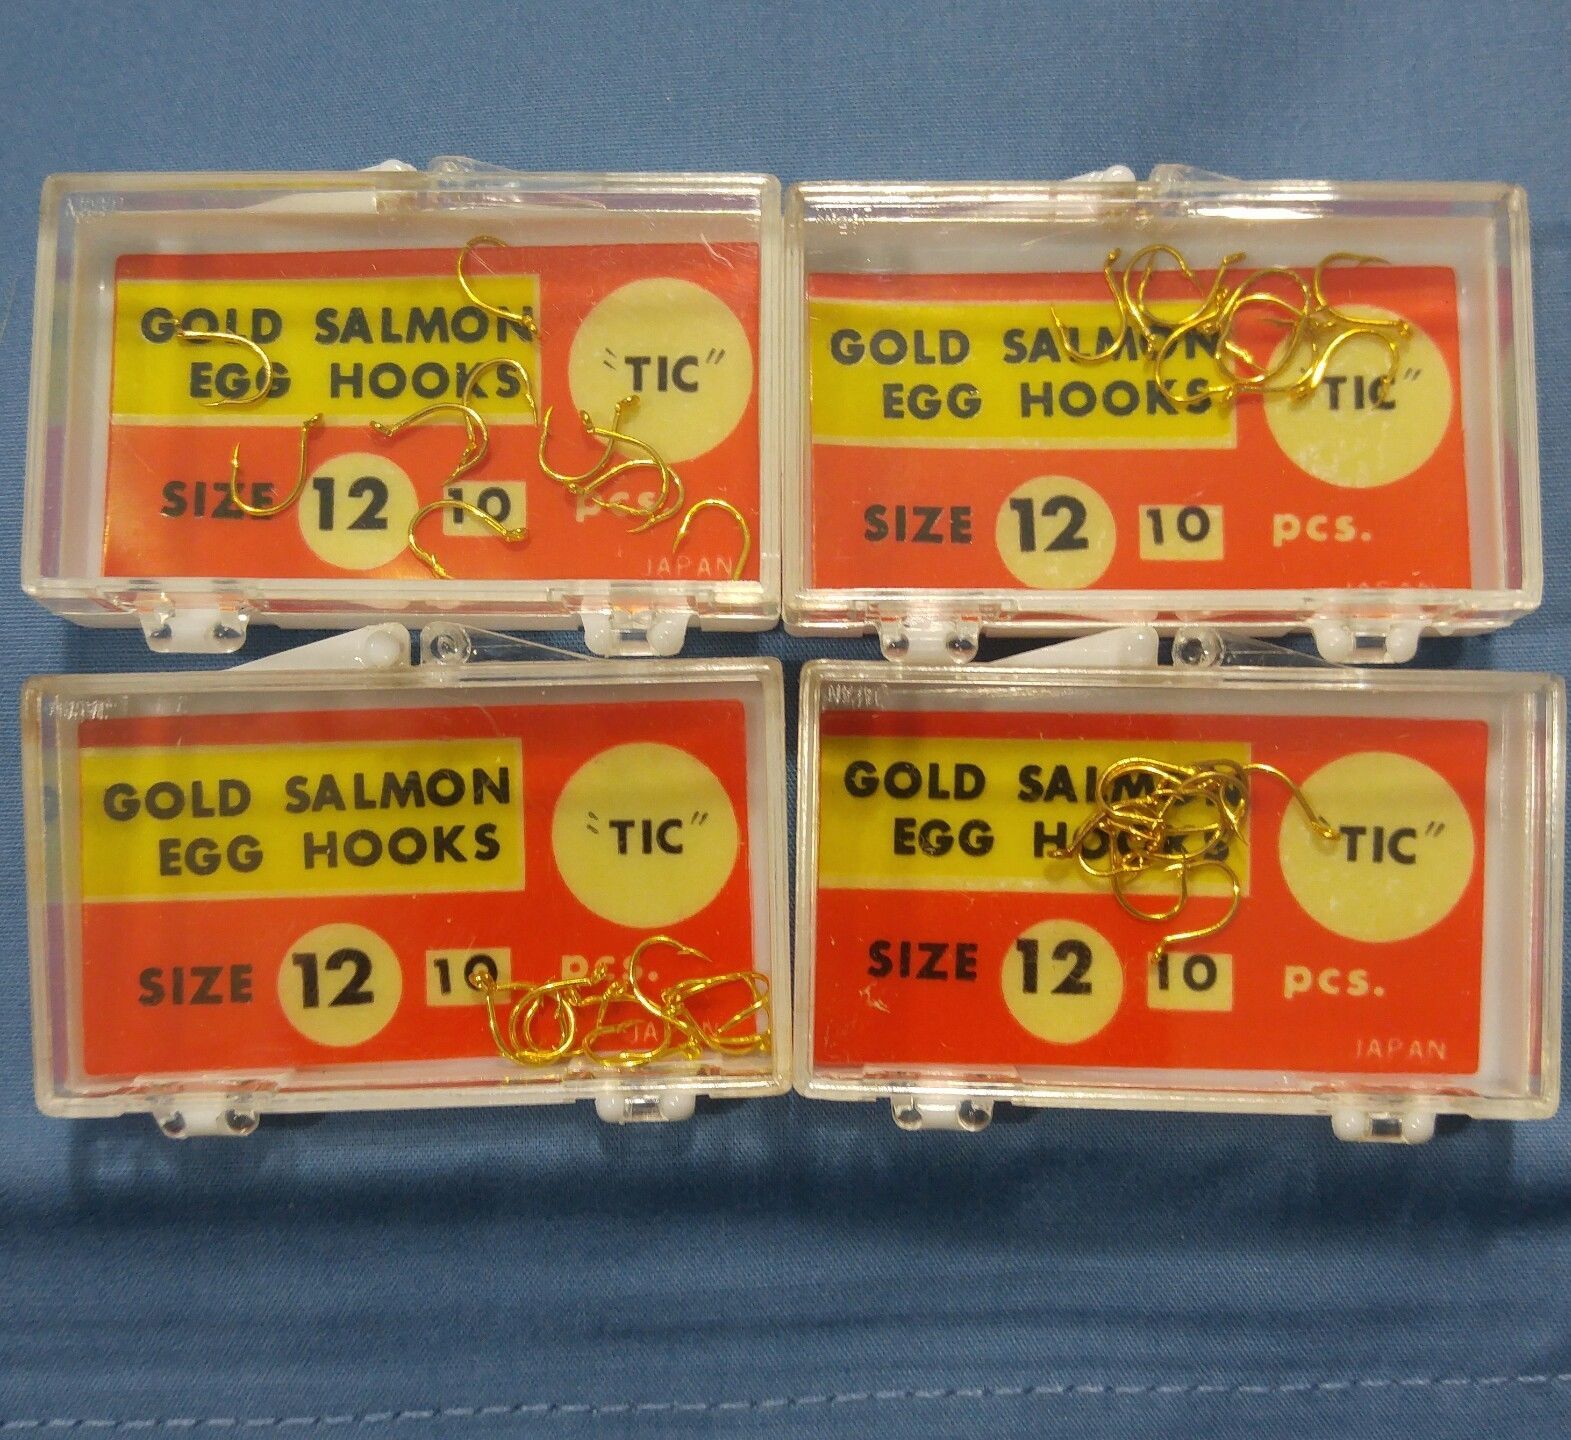 Vtg TIC Gold Salmon Egg Hooks Size 12 JAPAN 4 pks x 10 Hooks Plastic Cases NOS - $15.88